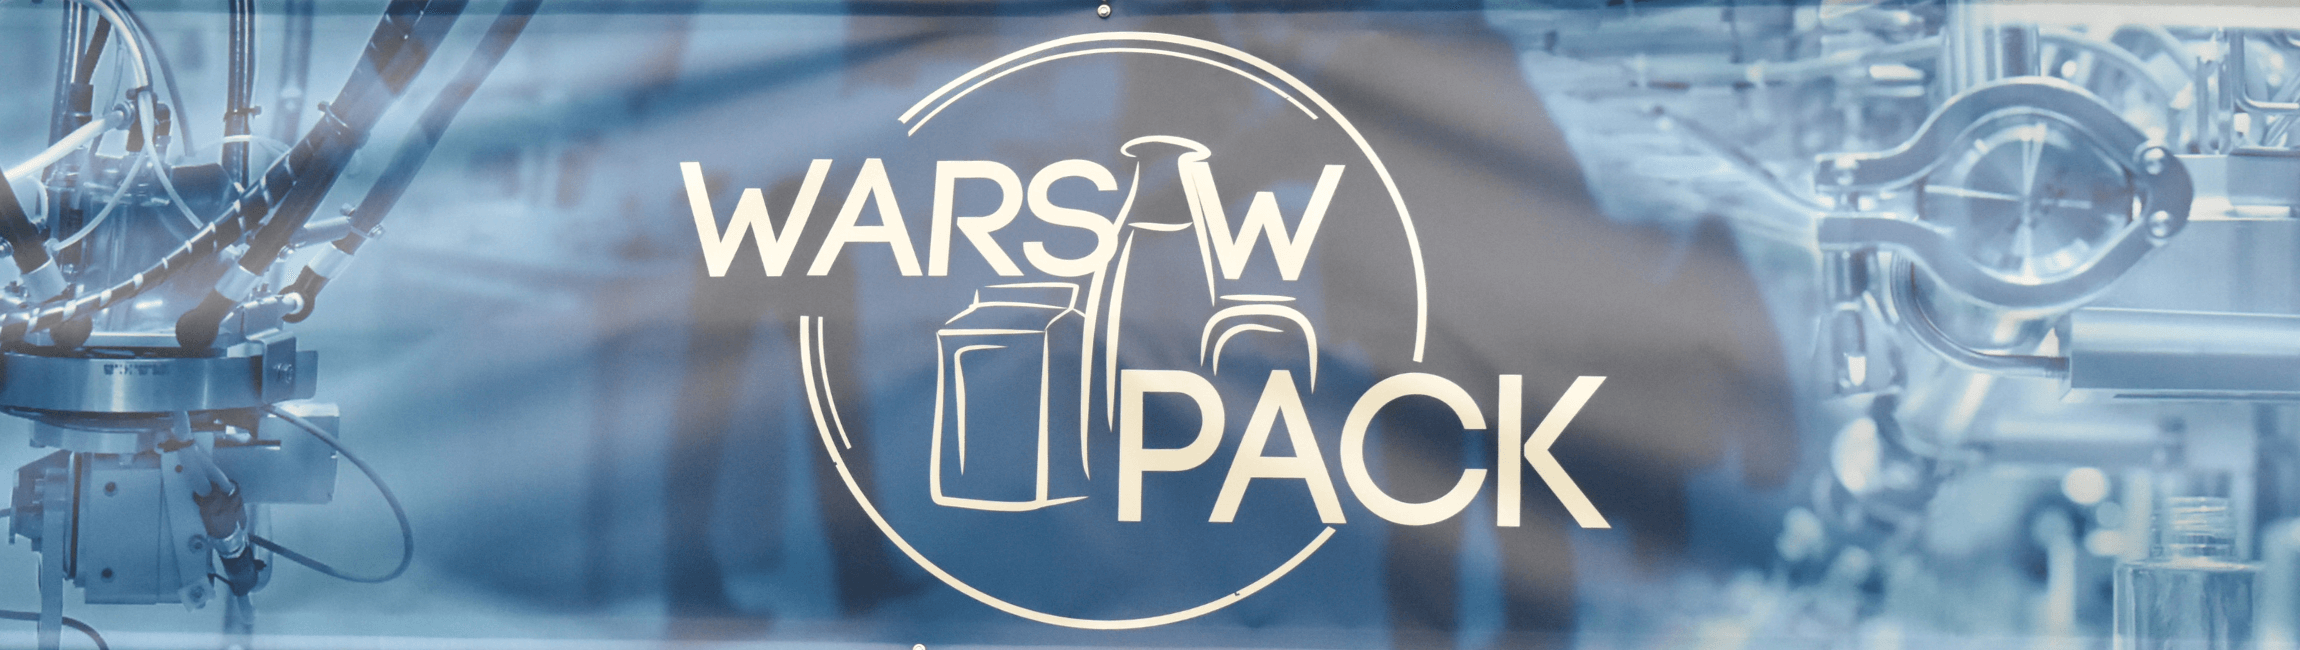 W daniach 23 – 25 kwietnia odbyła się dziewiąta edycja targów „Warsaw Pack 9”